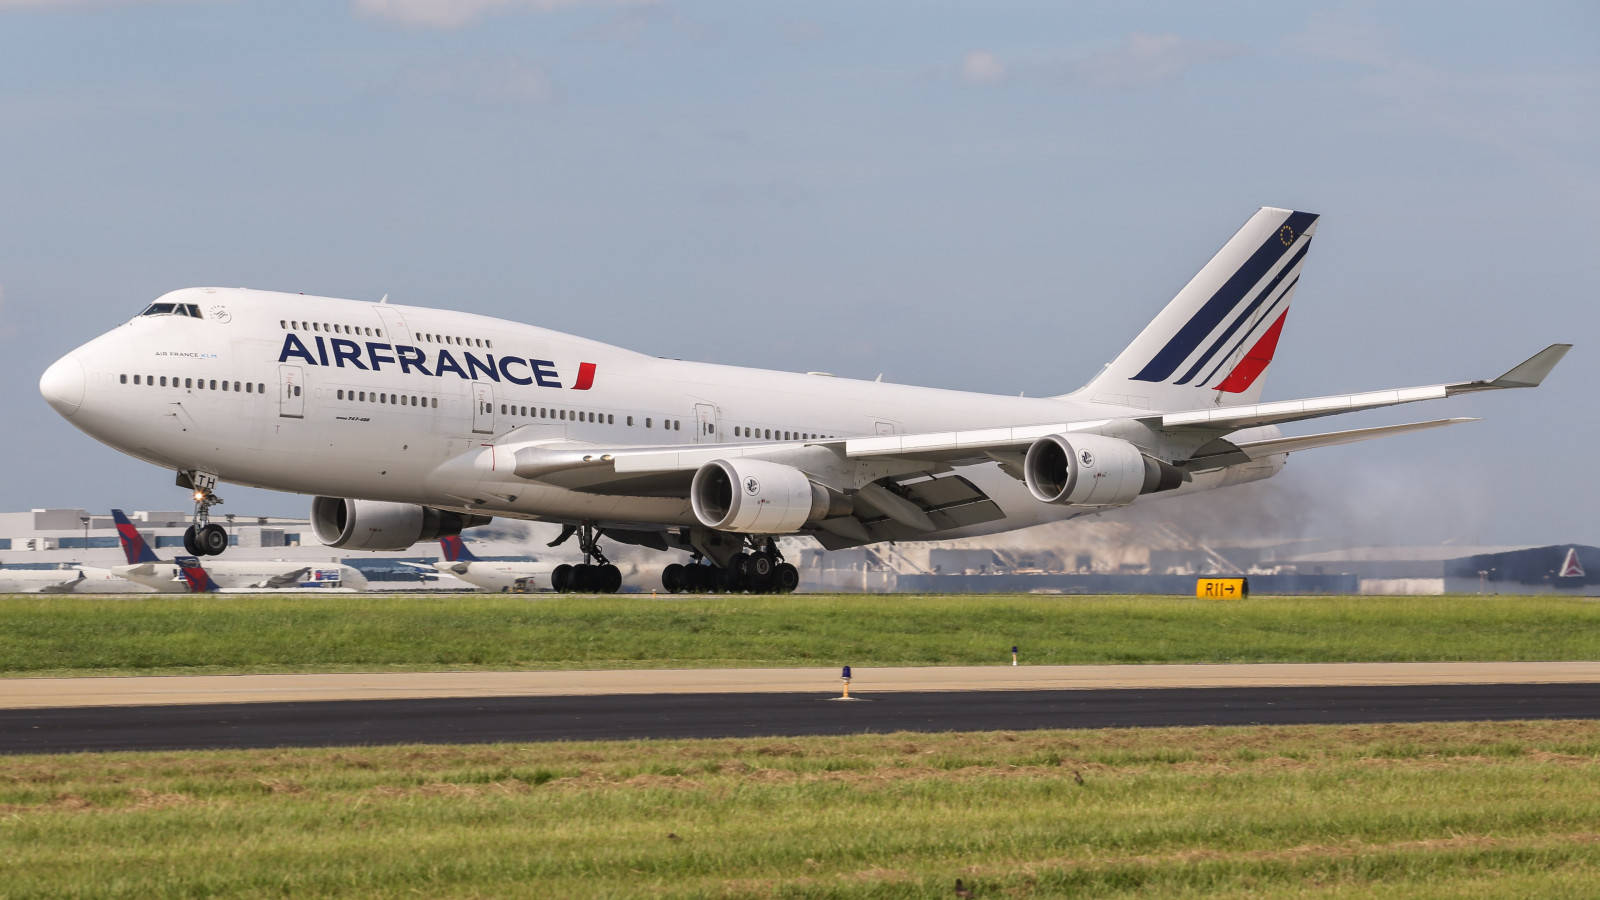 Air France Air Carrier Boeing 747 Plane Wallpaper